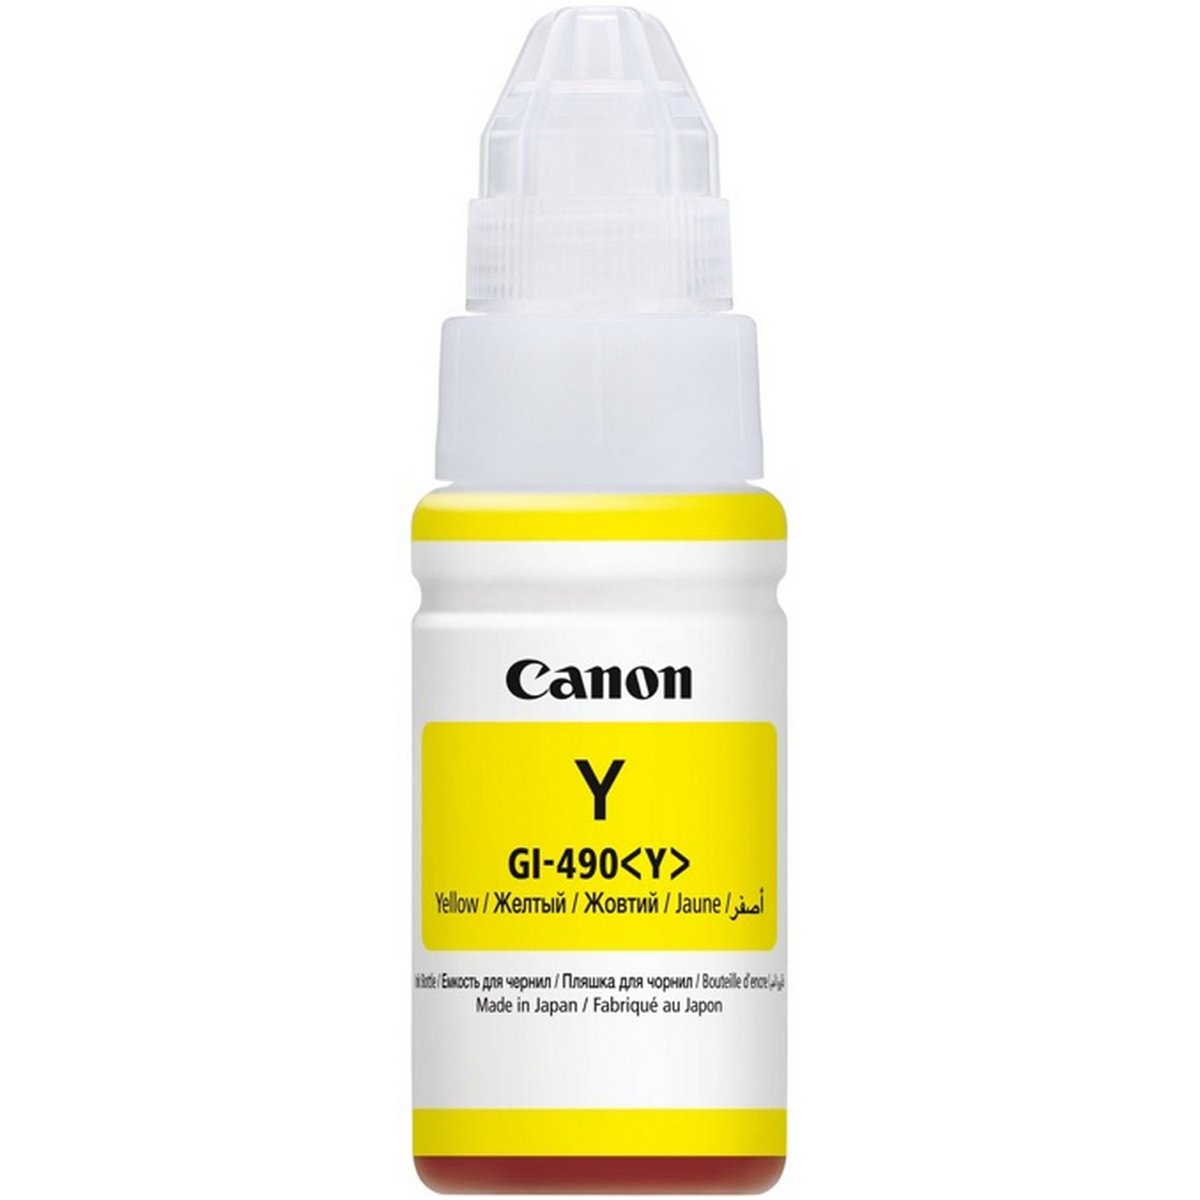 Canon Ink Bottle Cartridge GI-490 Yellow